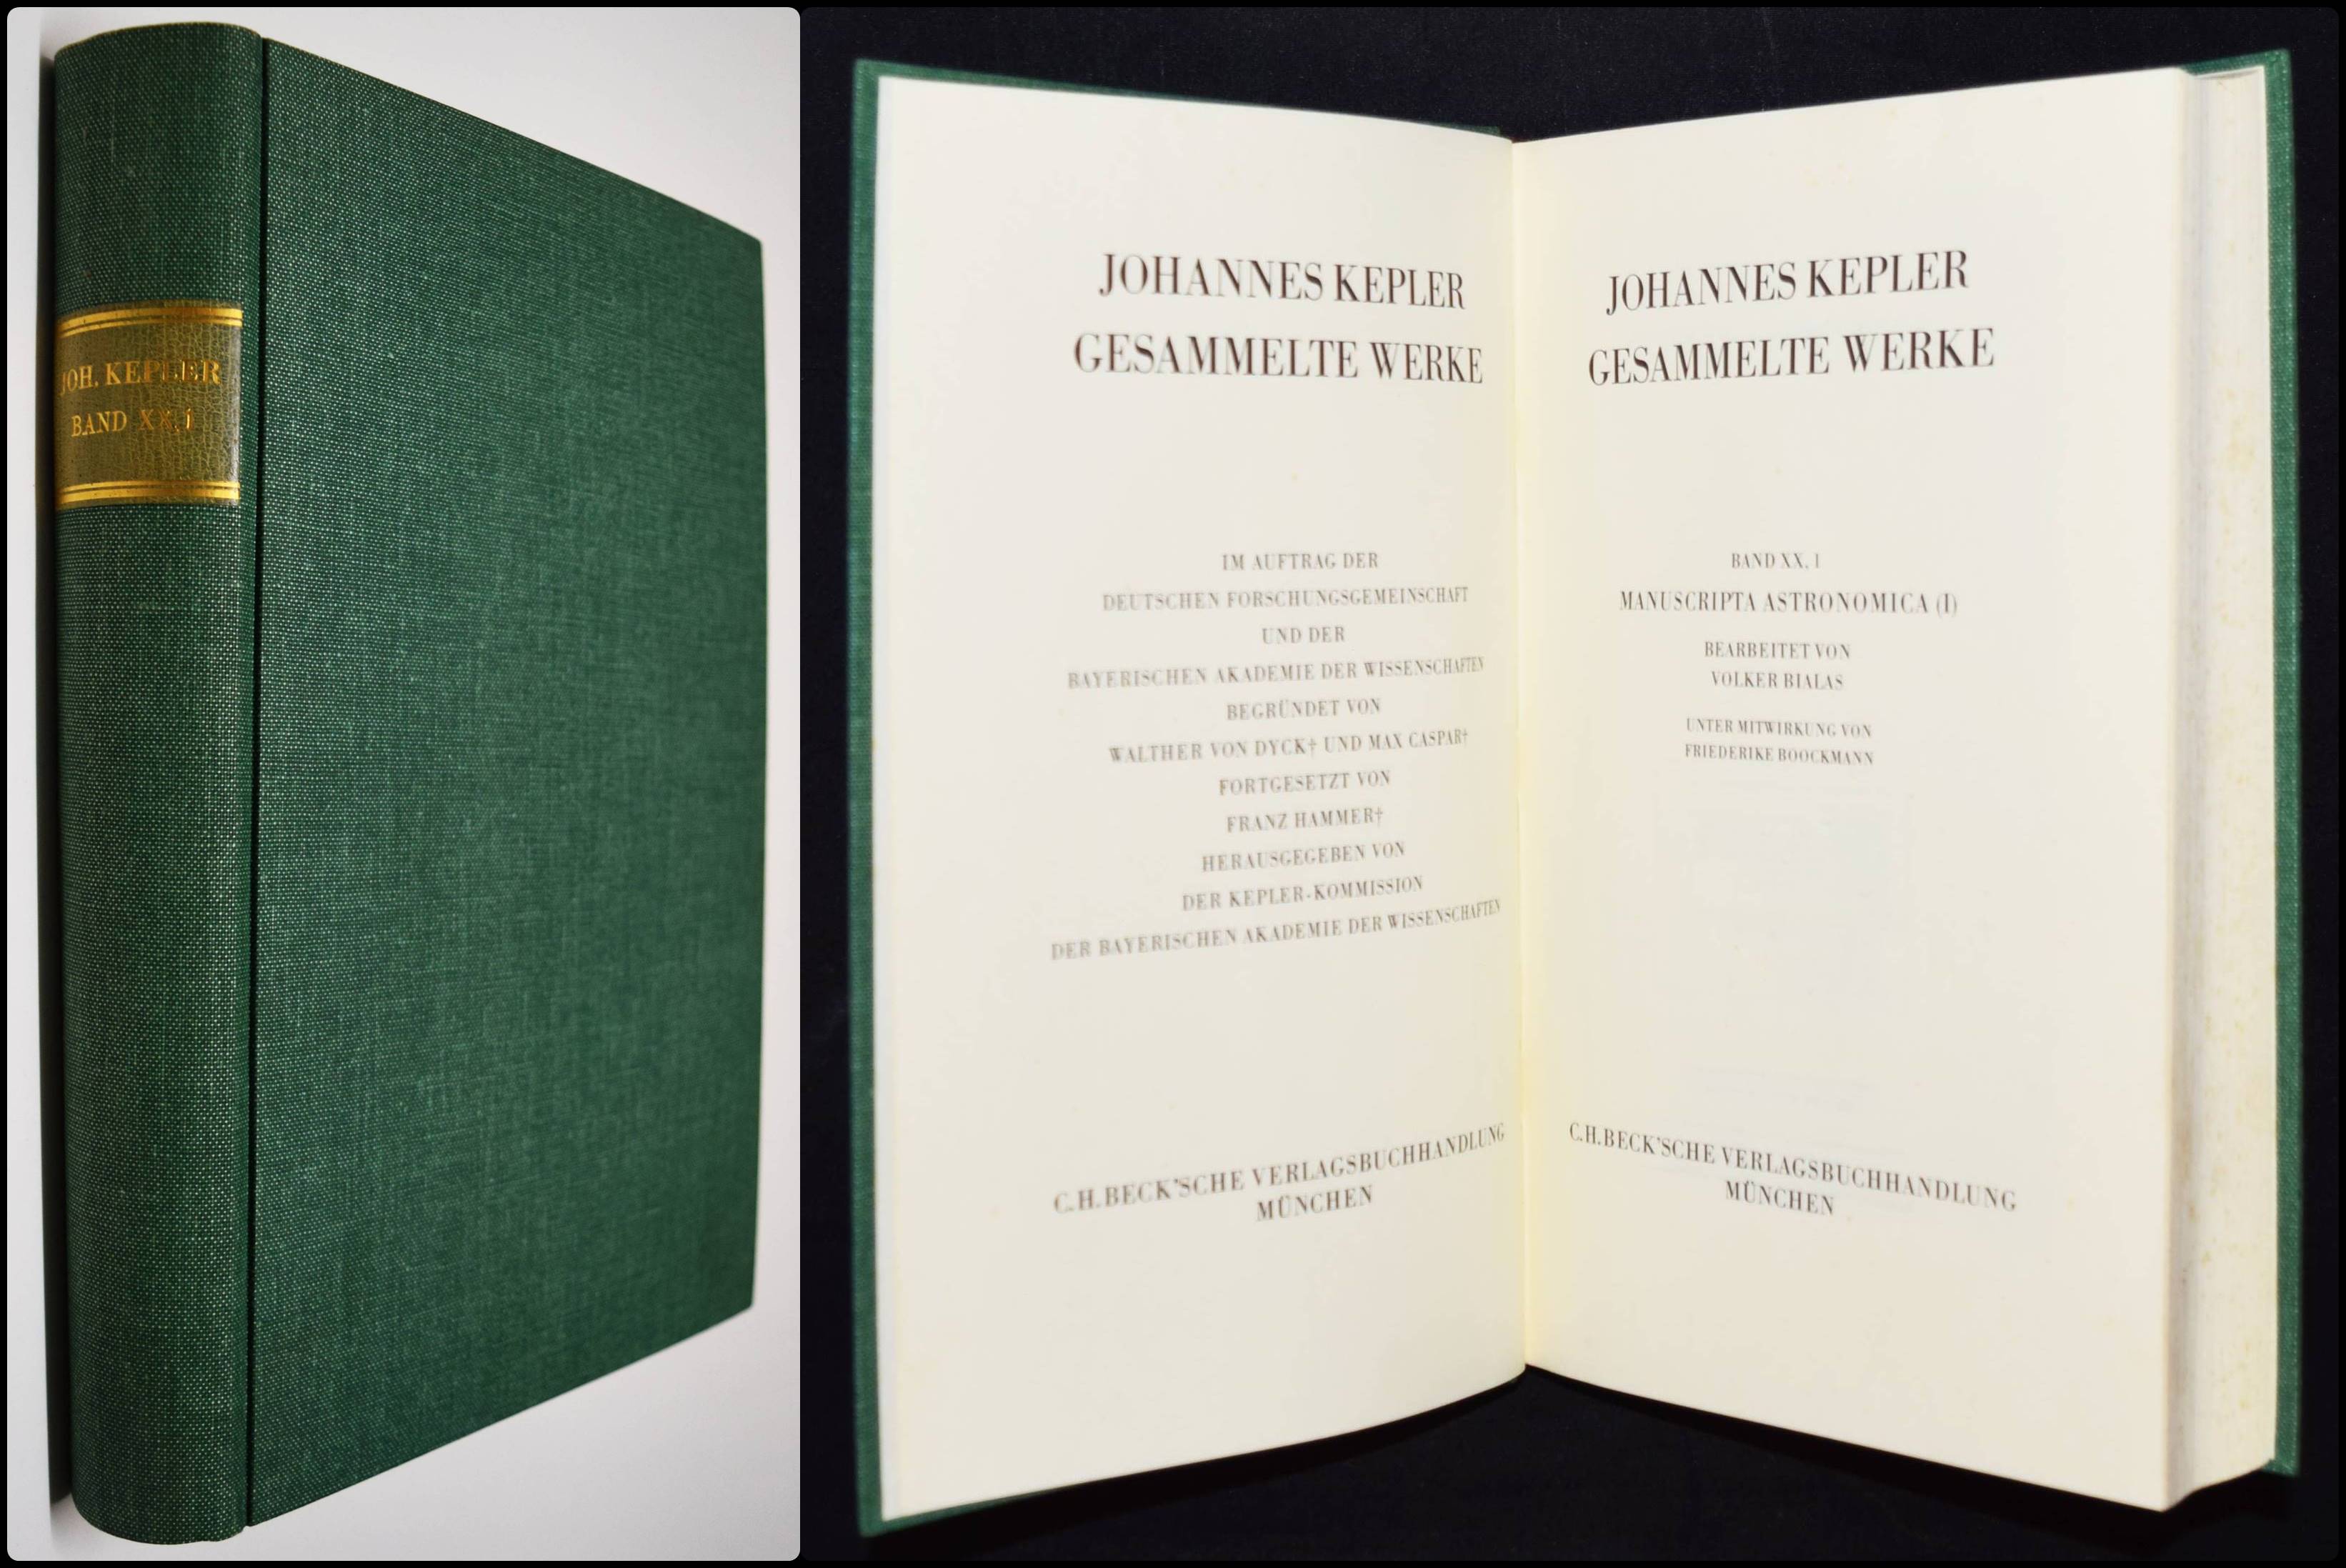 Manuscripta astronomica (I). Bearbeitet von Volker Bialas unter Mitwirkung von Friederike Boockmann. - Kepler, Johannes.